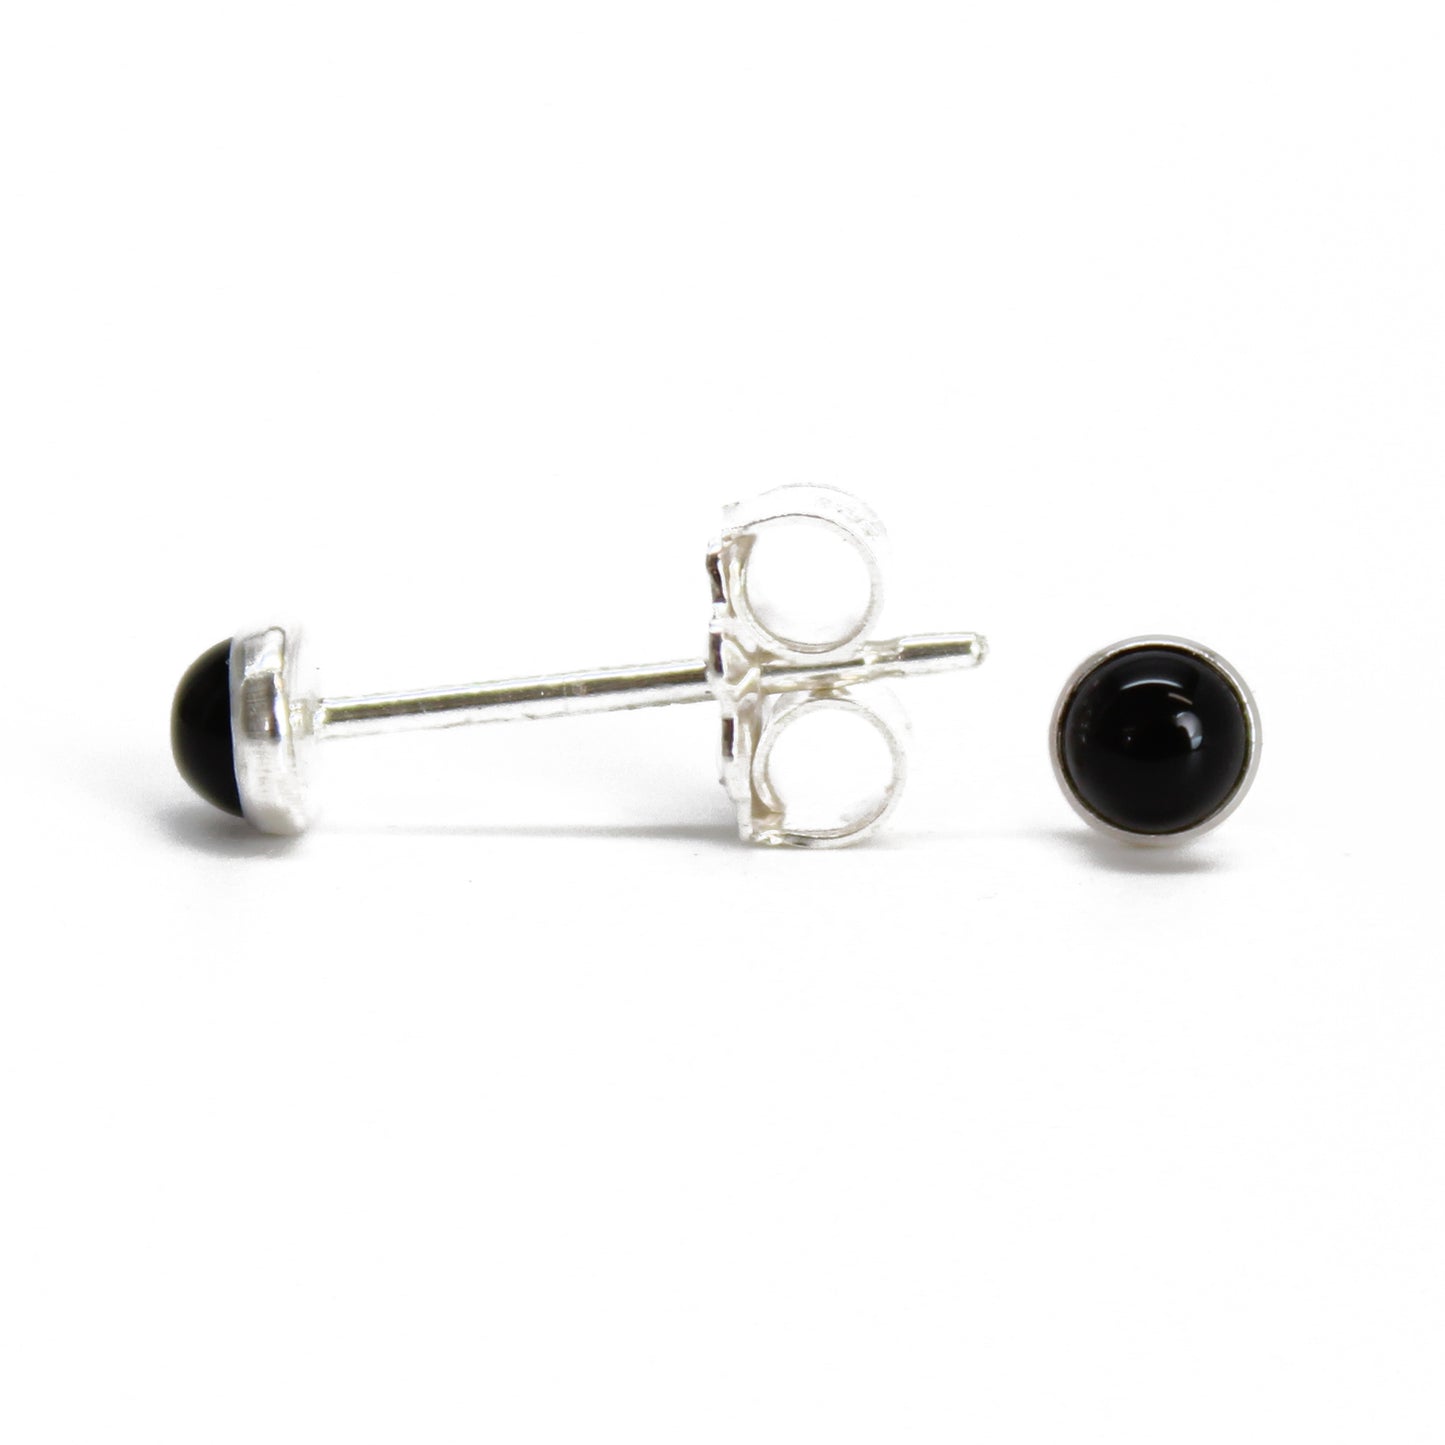 Pin on Black Swan fringe long earrings ear line ear studs needle new korea  hypoallergenic earrings wholesalers